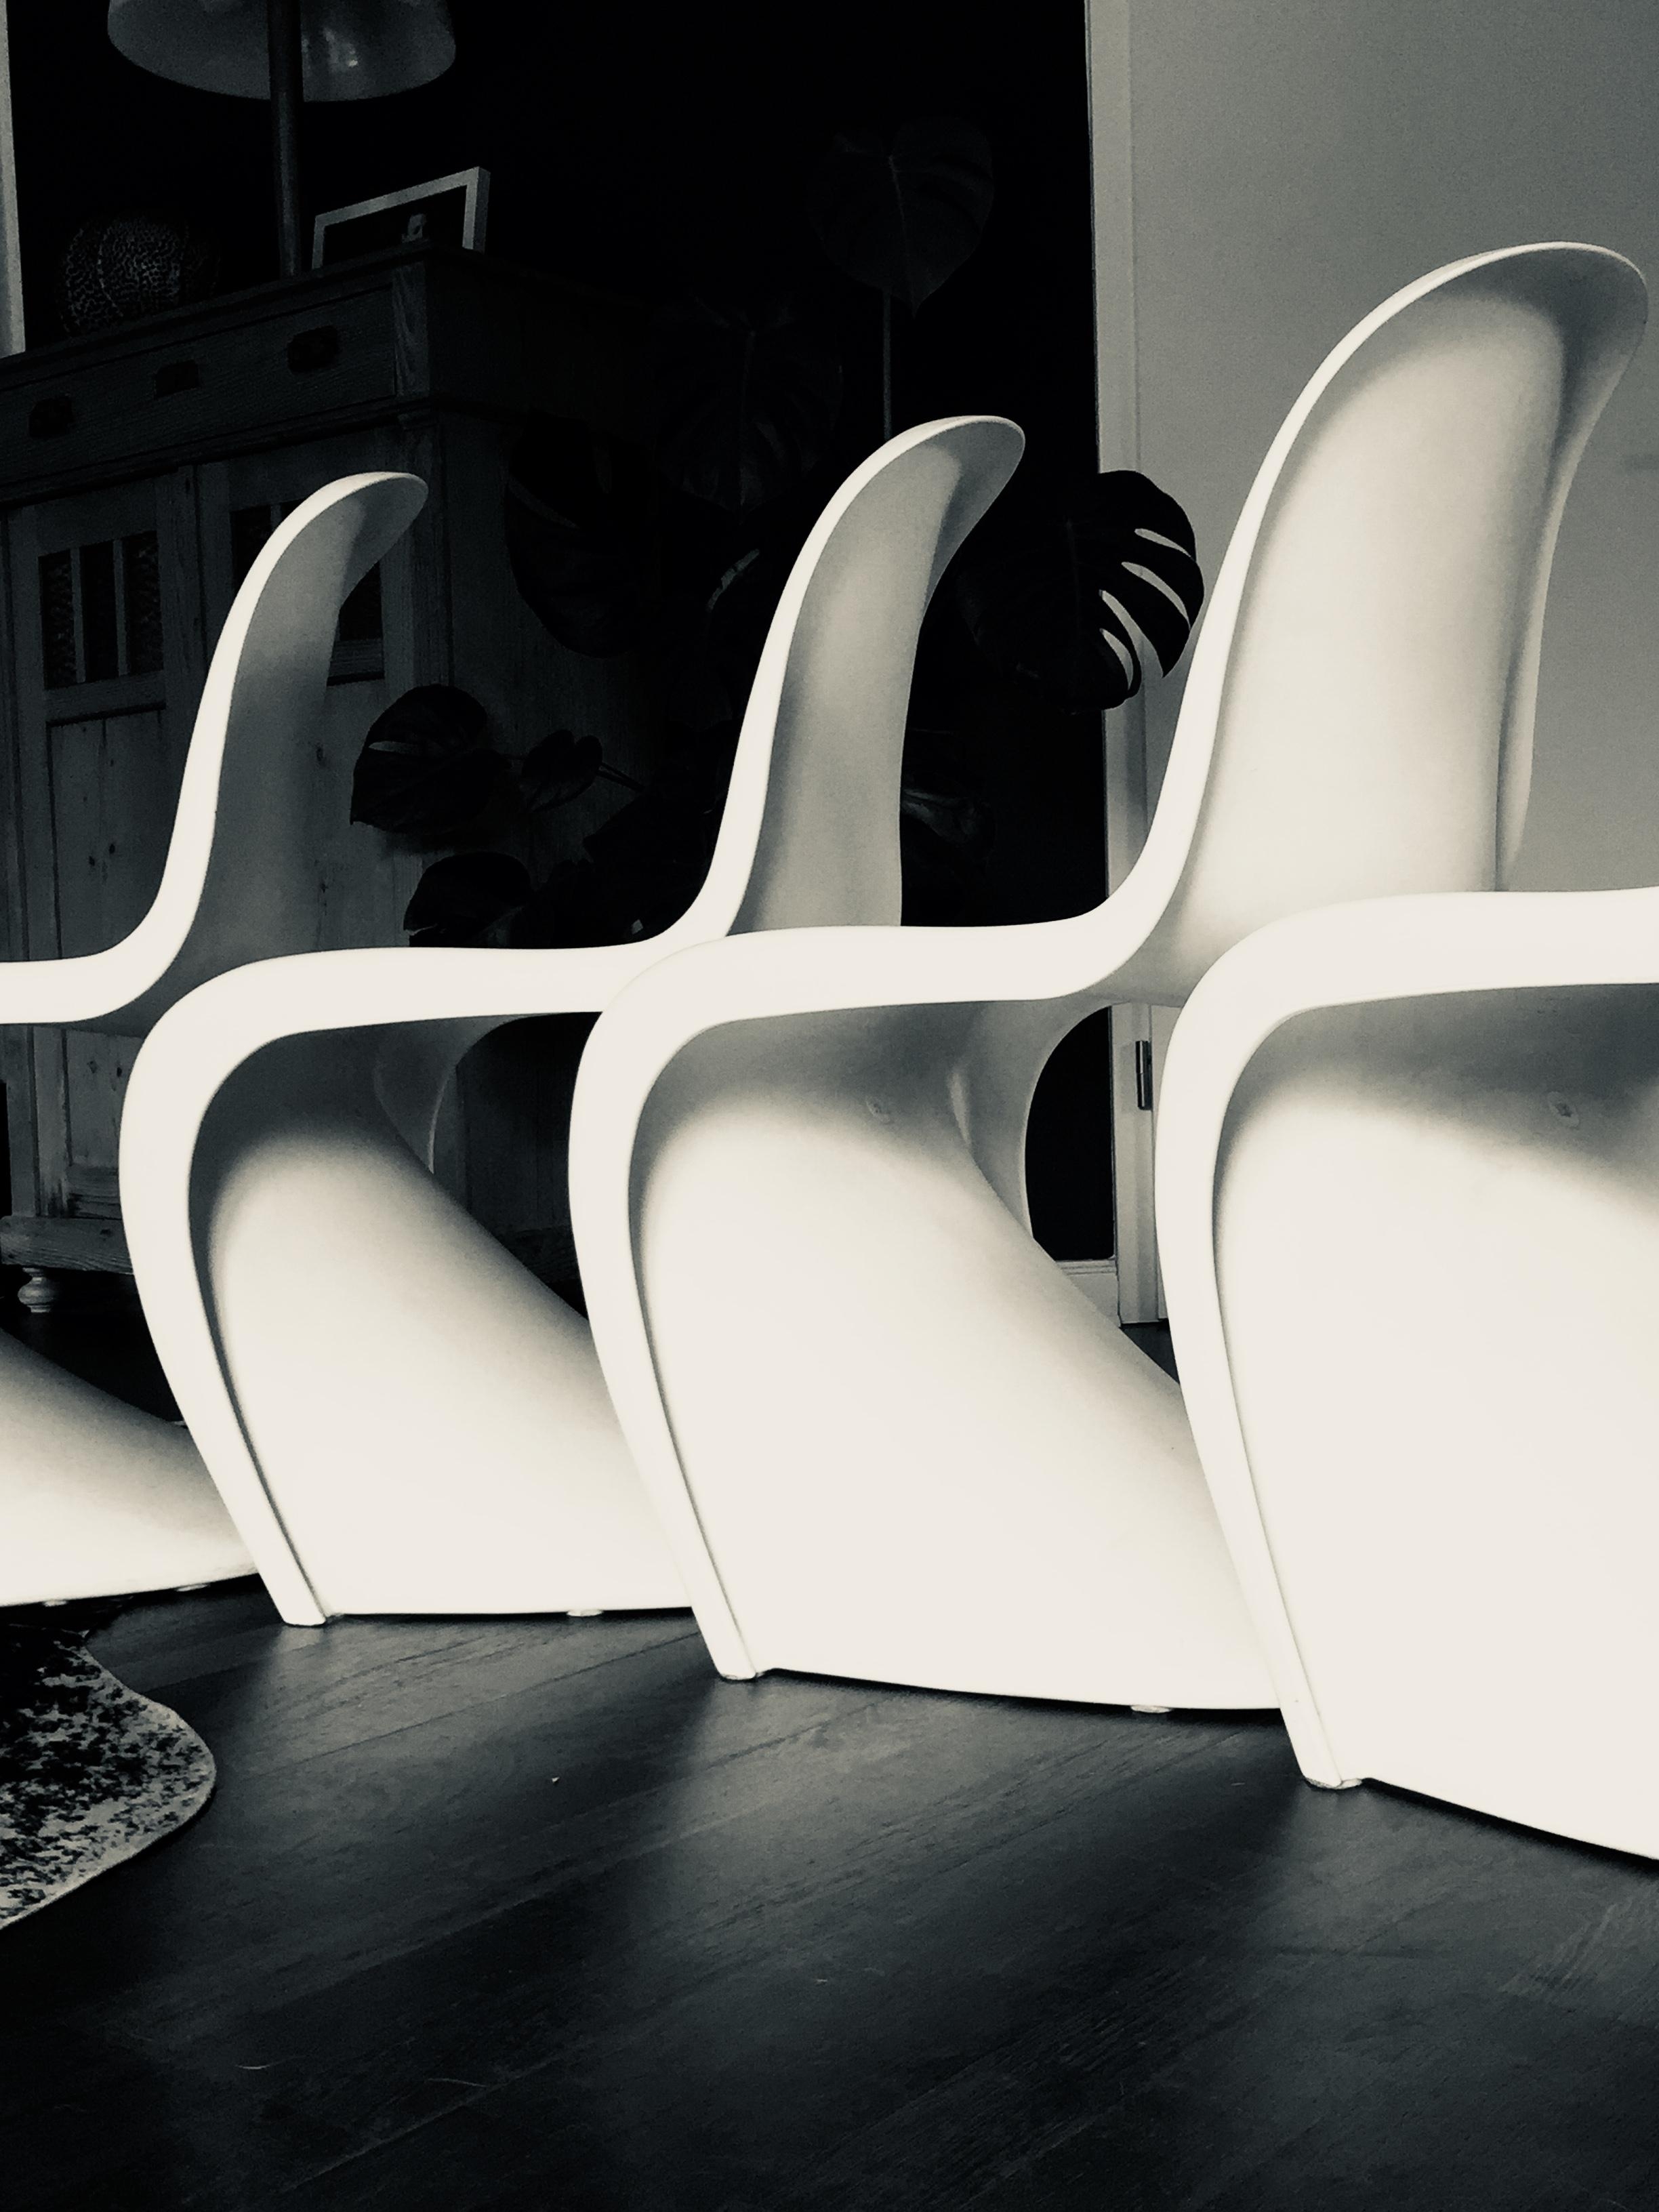 Stuhl Polonaise L🖤O🖤V🖤E
Seit 19 Jahren an meiner Seite 